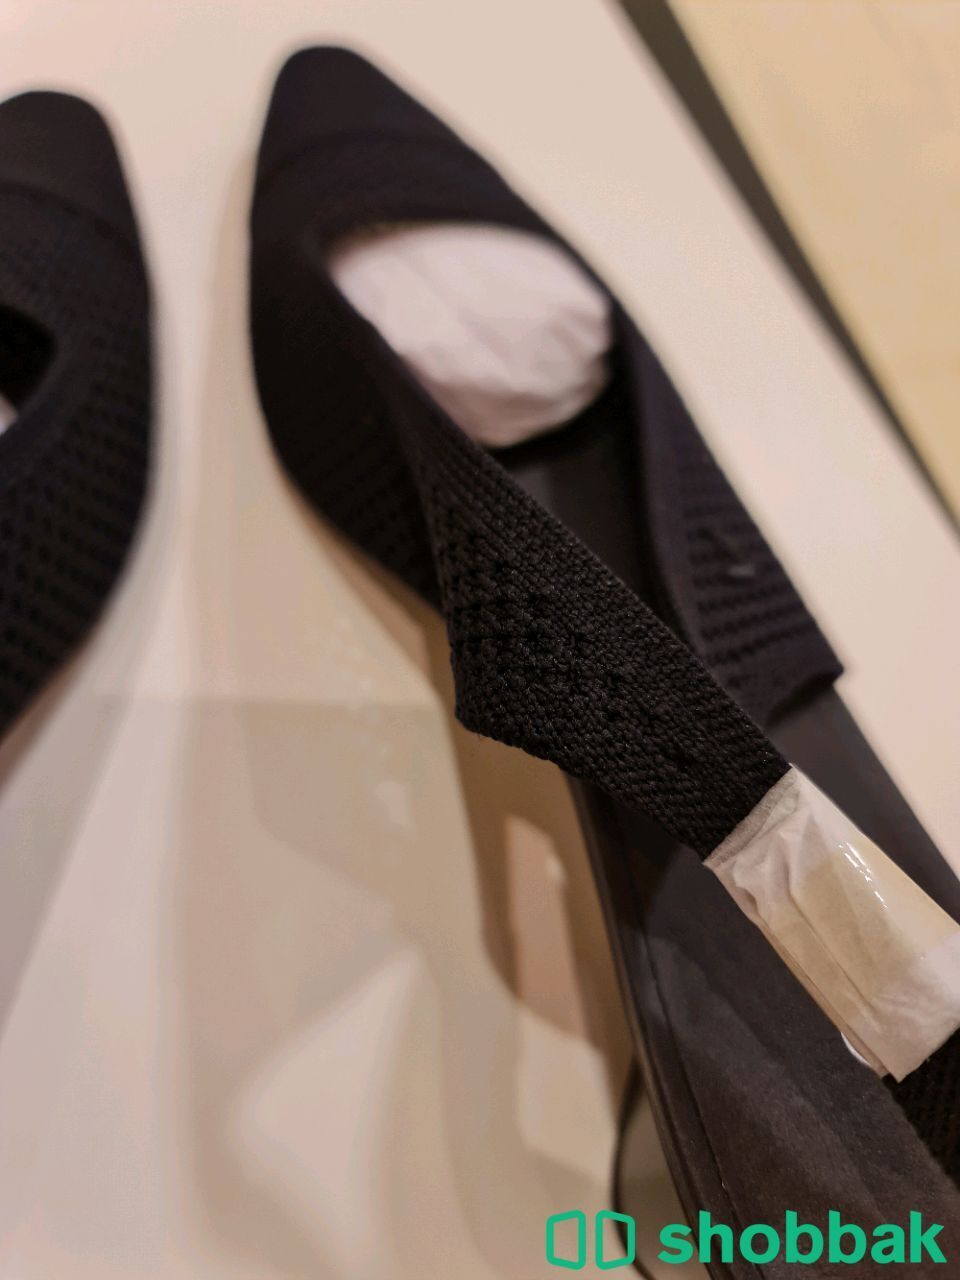 حذاء نسائي ماركة ڤيڤايا - مقاس 38 و اللون كُحلي Shobbak Saudi Arabia